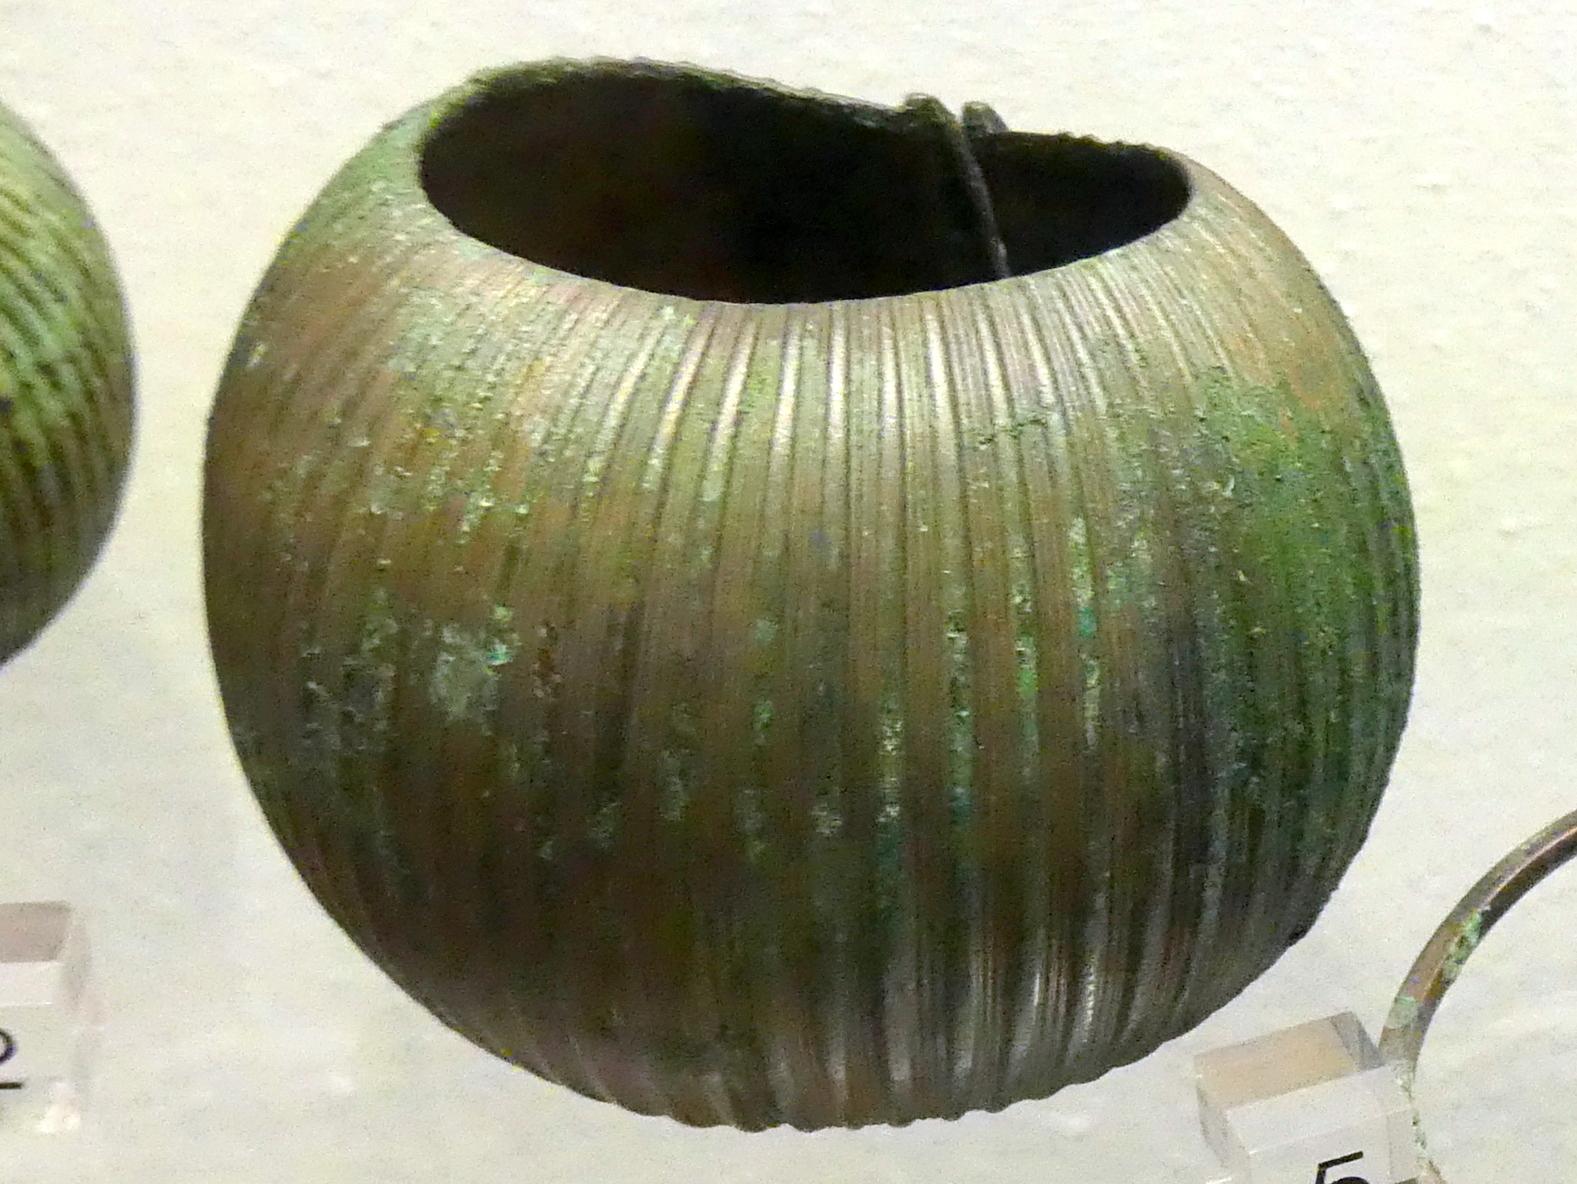 Melonenarmband, Hallstattzeit, 700 - 200 v. Chr., Bild 1/2